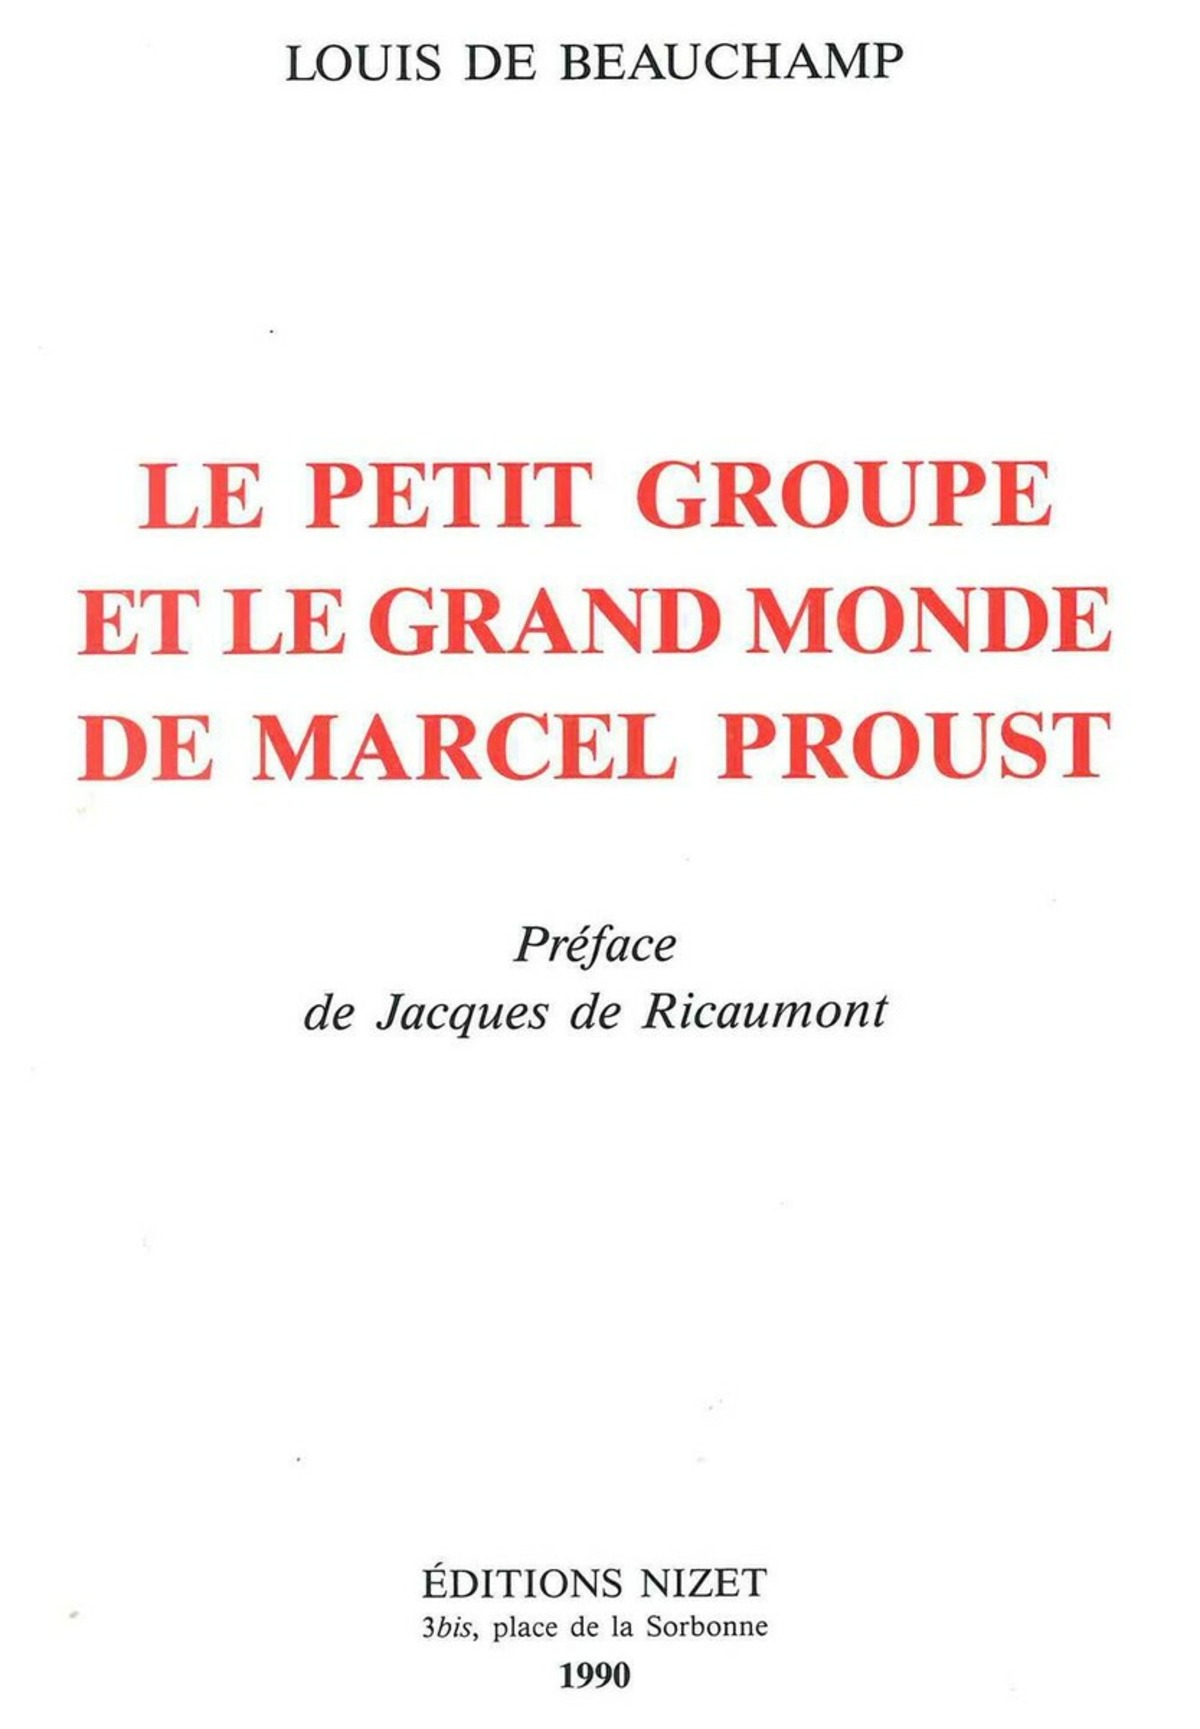 Le Petit groupe et le grand monde de Marcel Proust